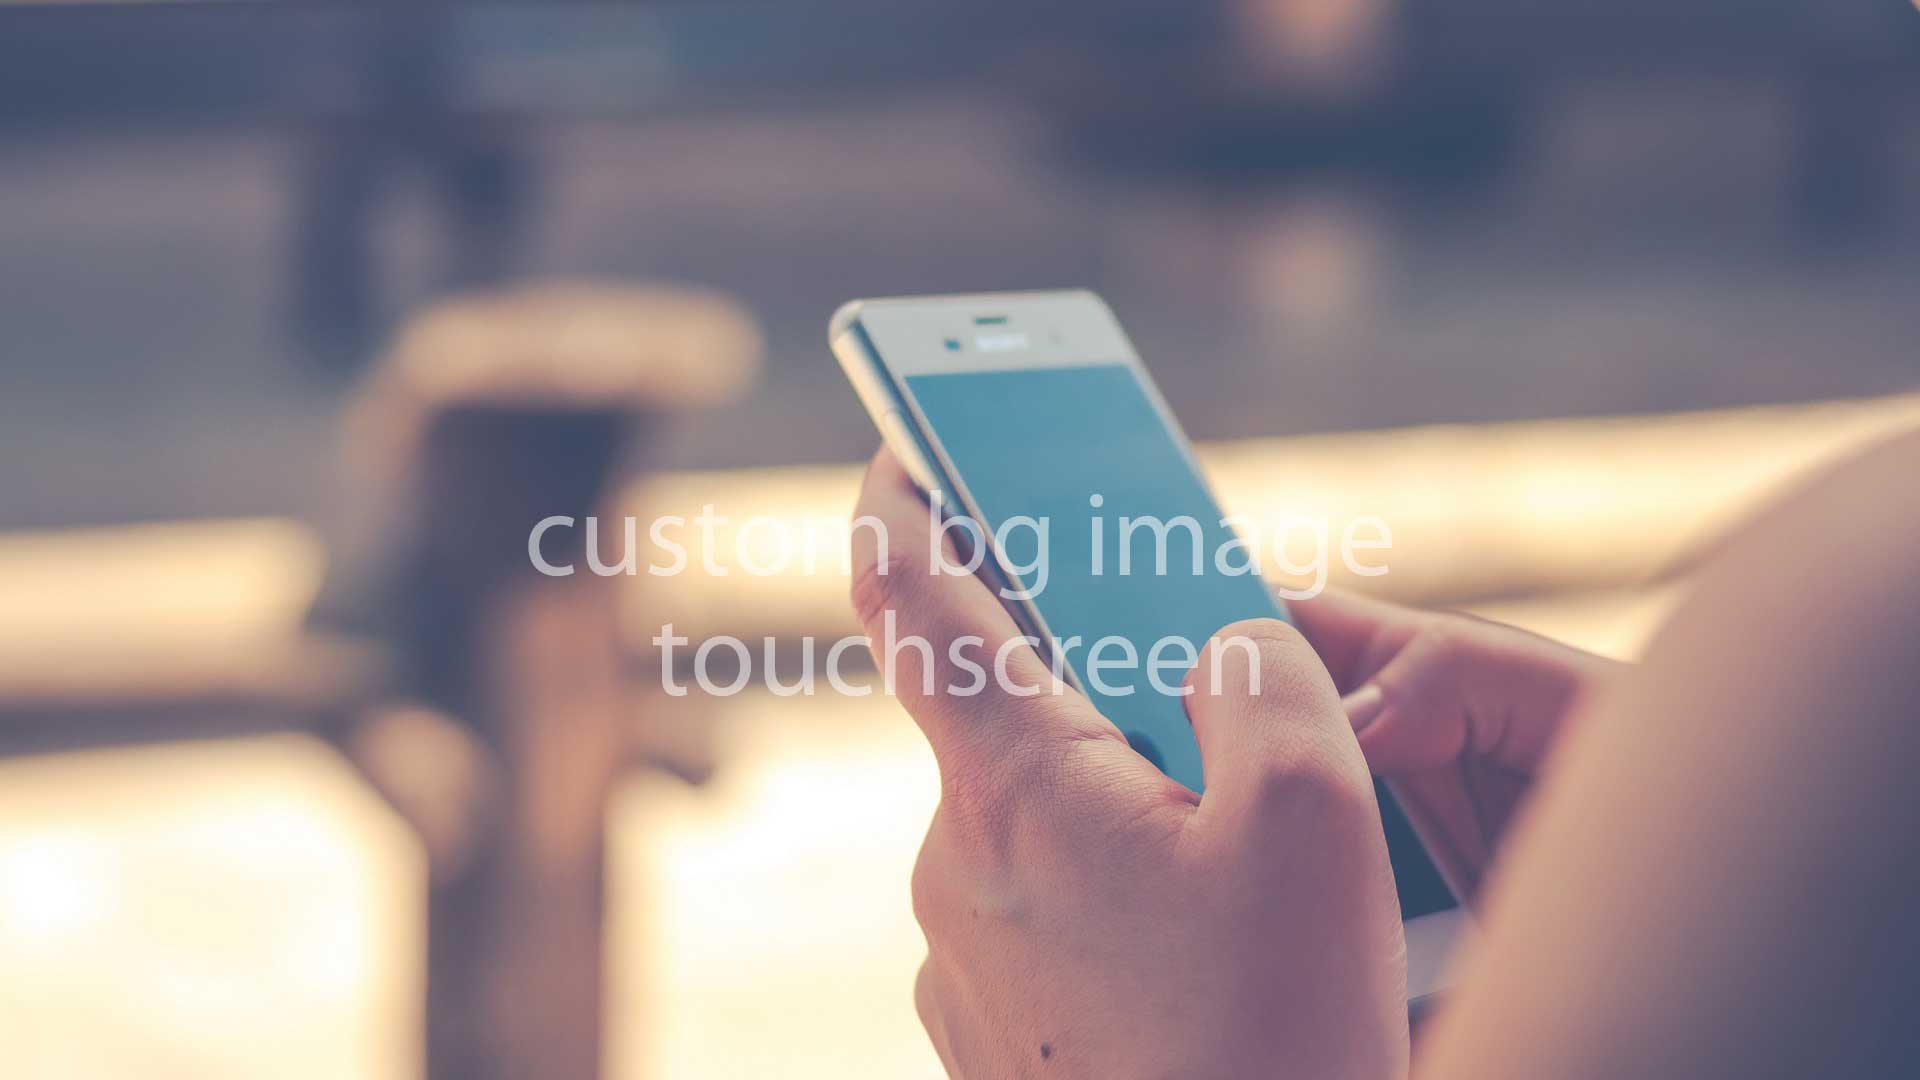 Touchscreen